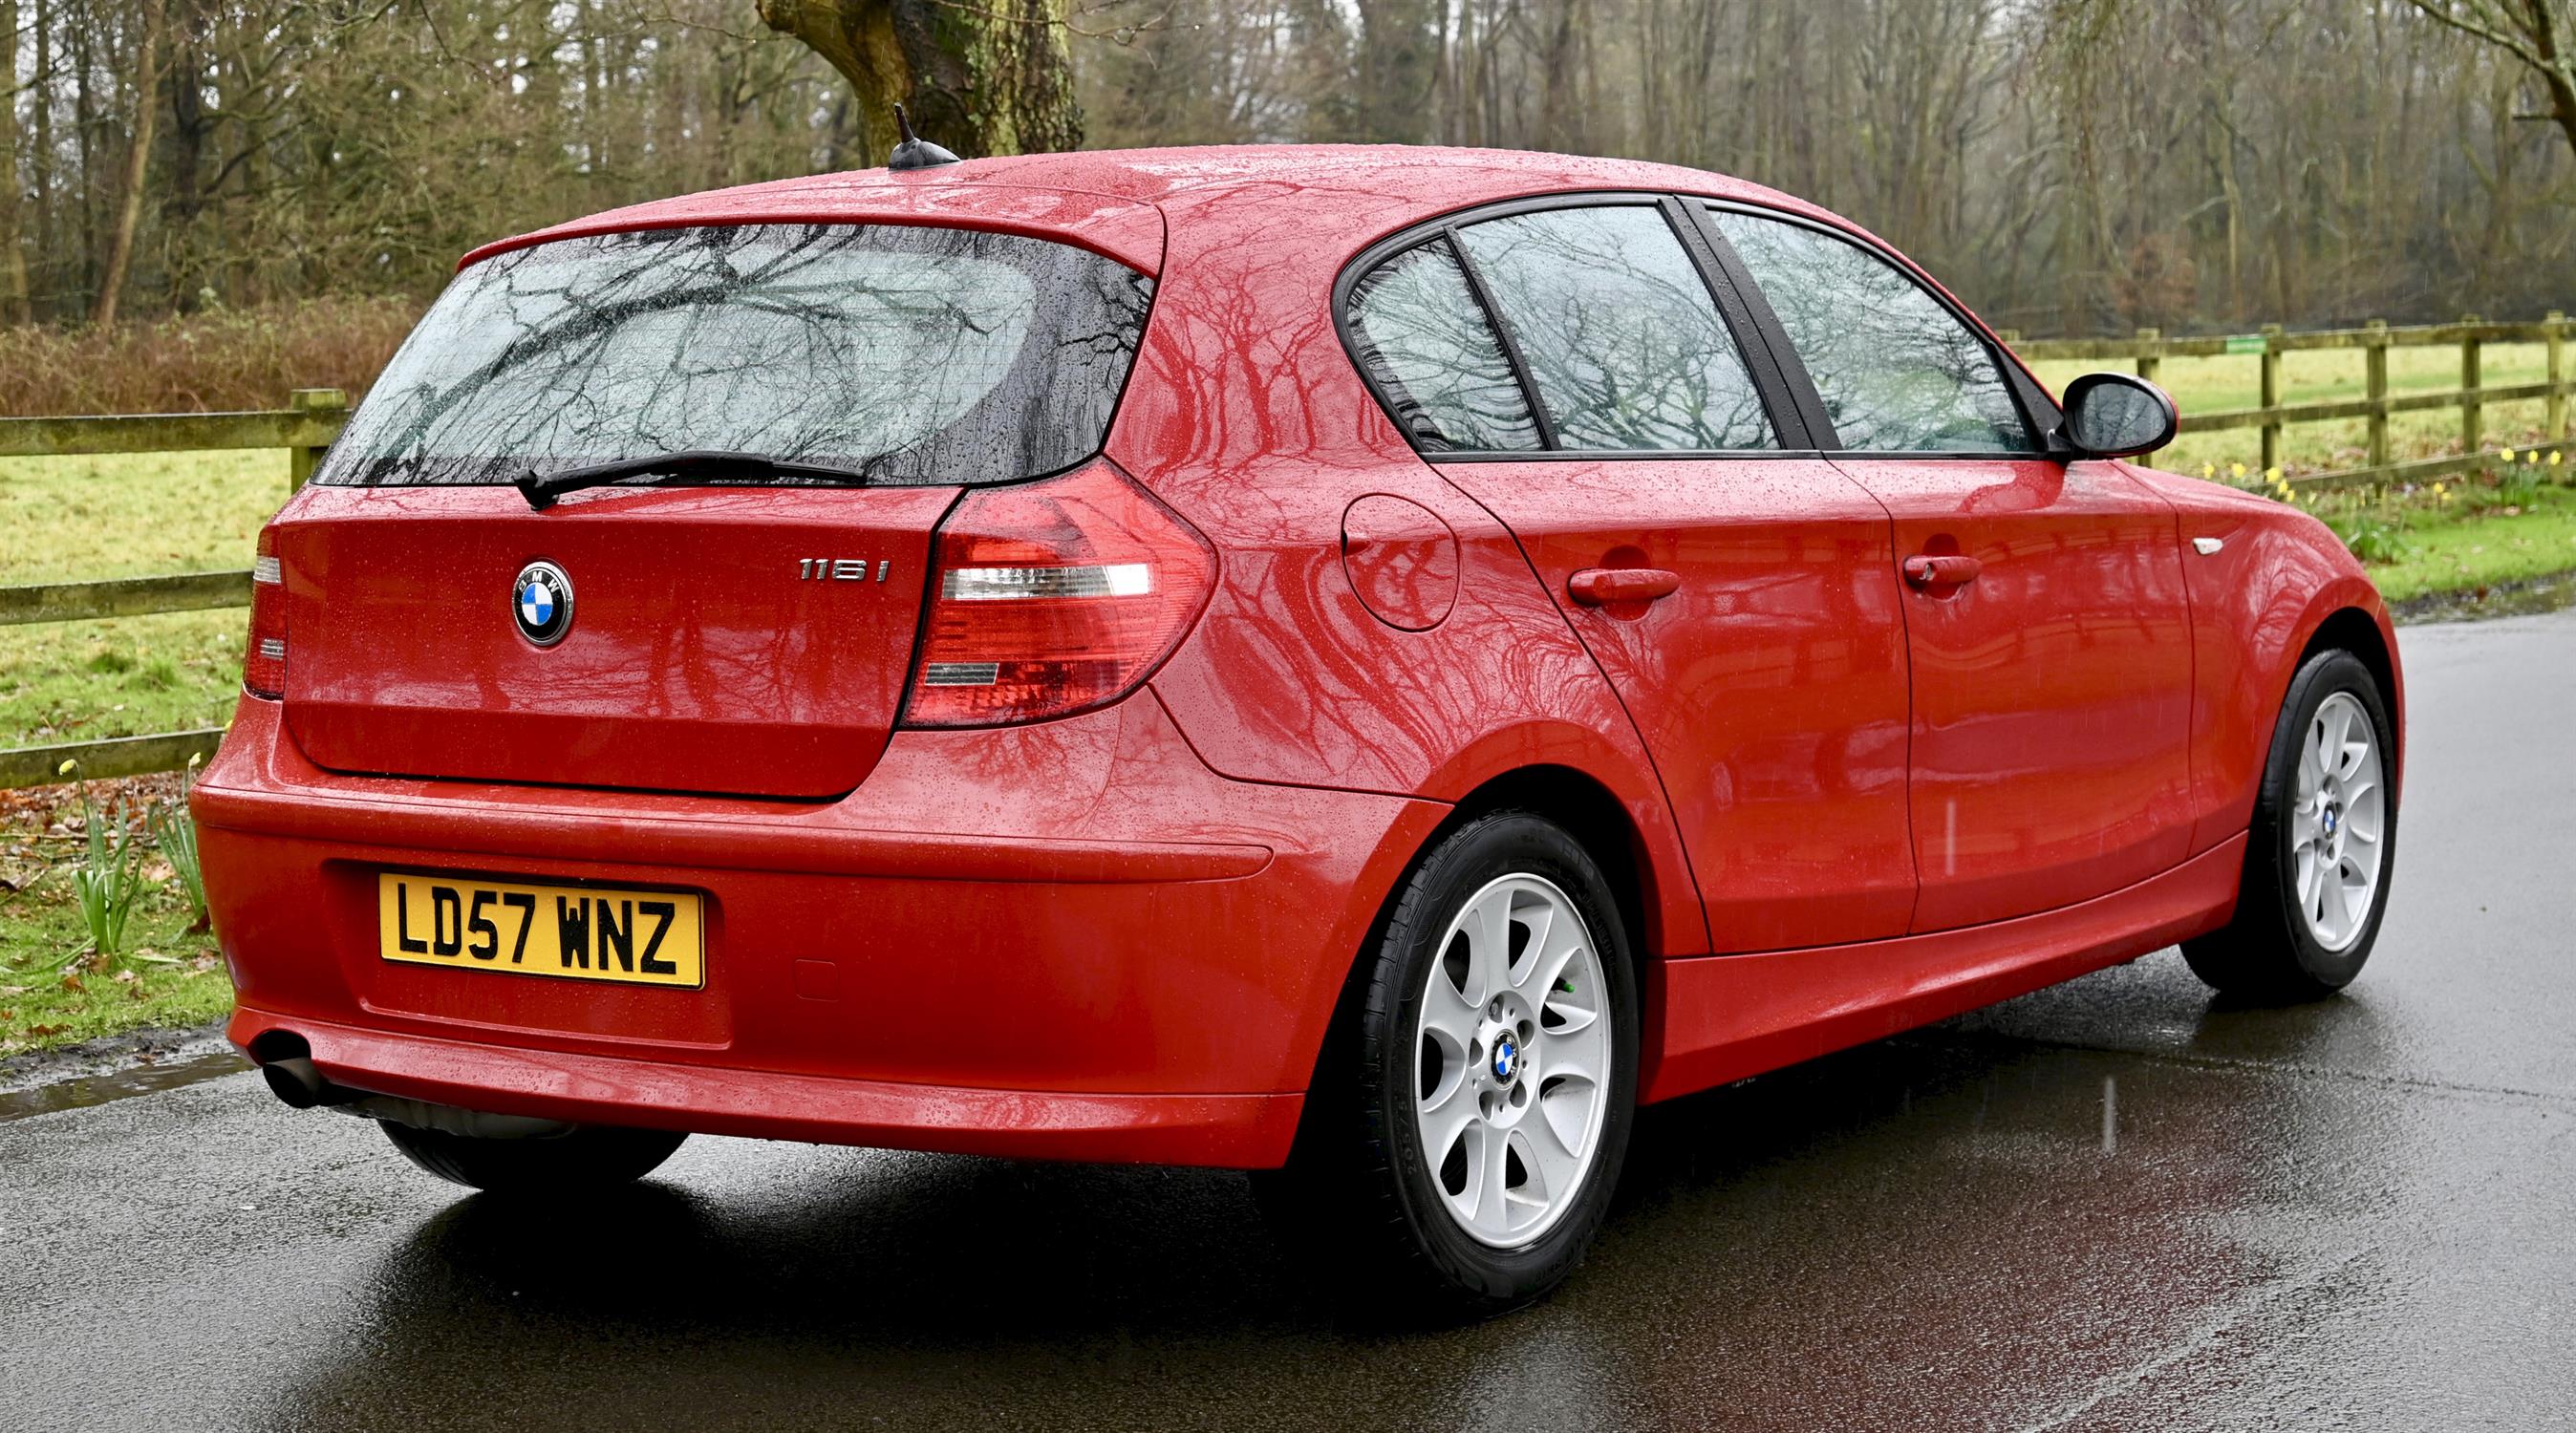 2007 BMW 116i 1597cc Petrol 5 Door Hatchback. Registration number: LD57 WNZ. Mileage: 142,600. - Image 9 of 12